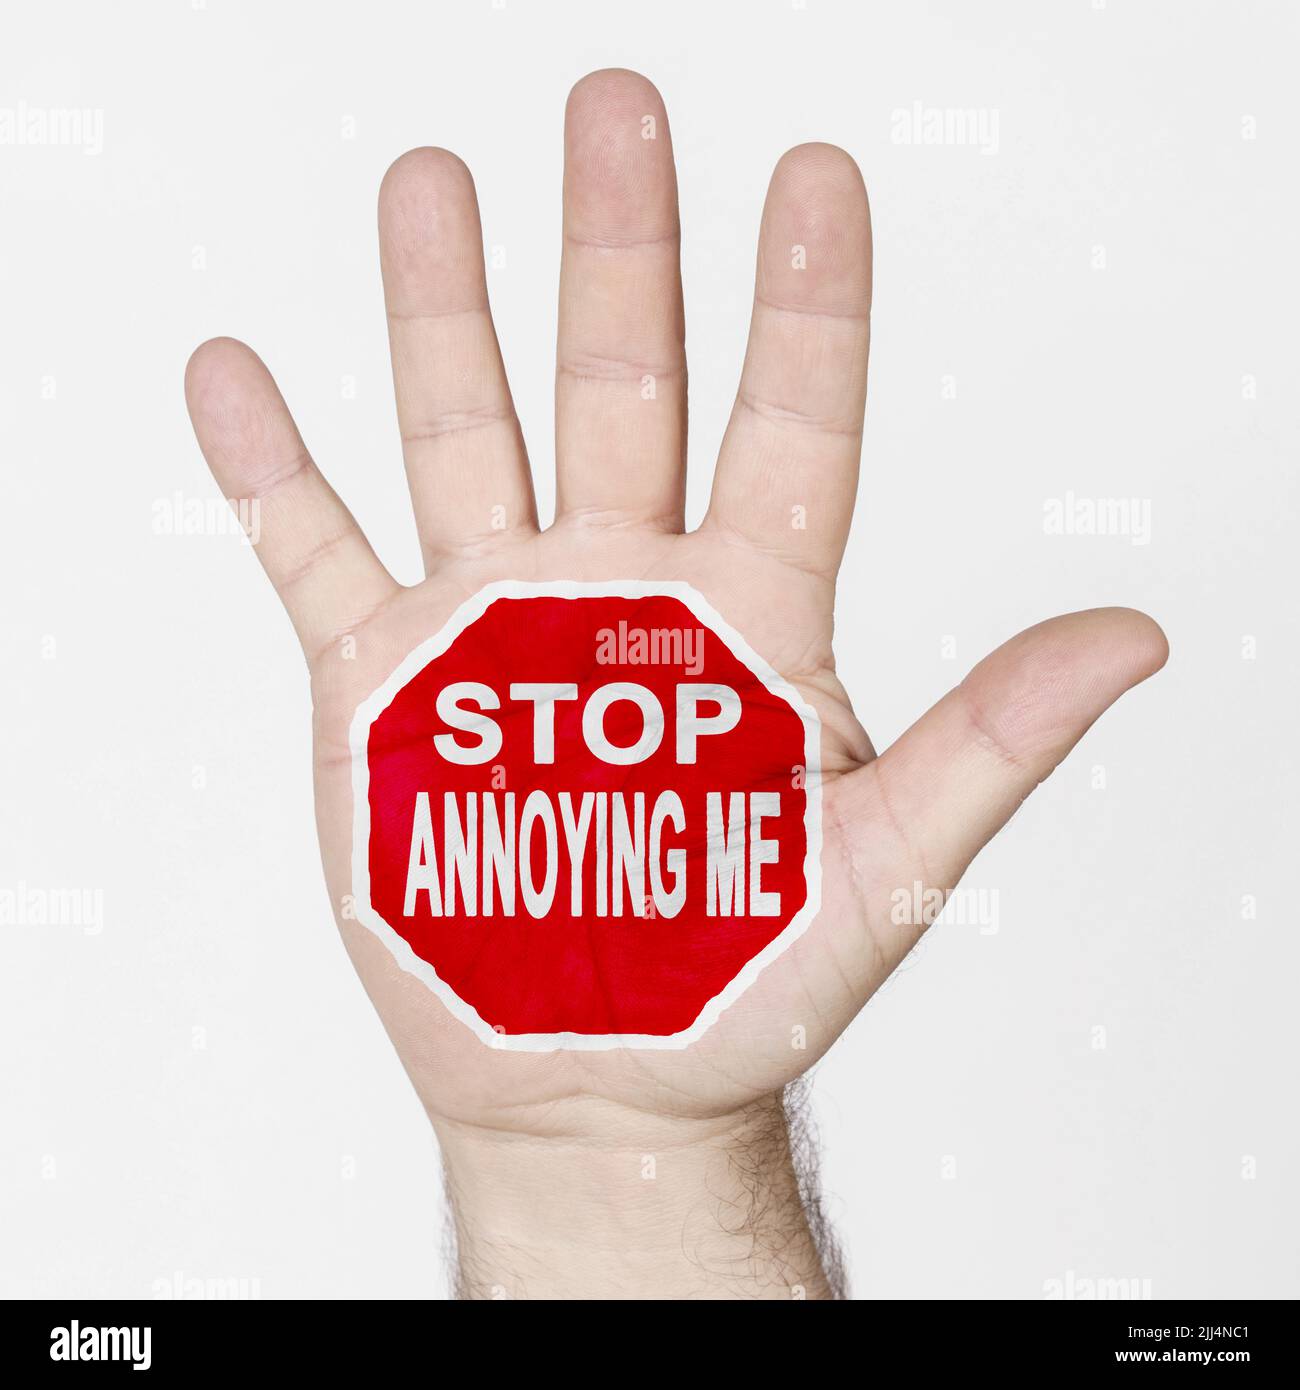 Sul palmo della mano c'è un segno di stop con l'iscrizione - SMETTA DI INFASTIDIRMI. Isolato su sfondo bianco. Foto Stock